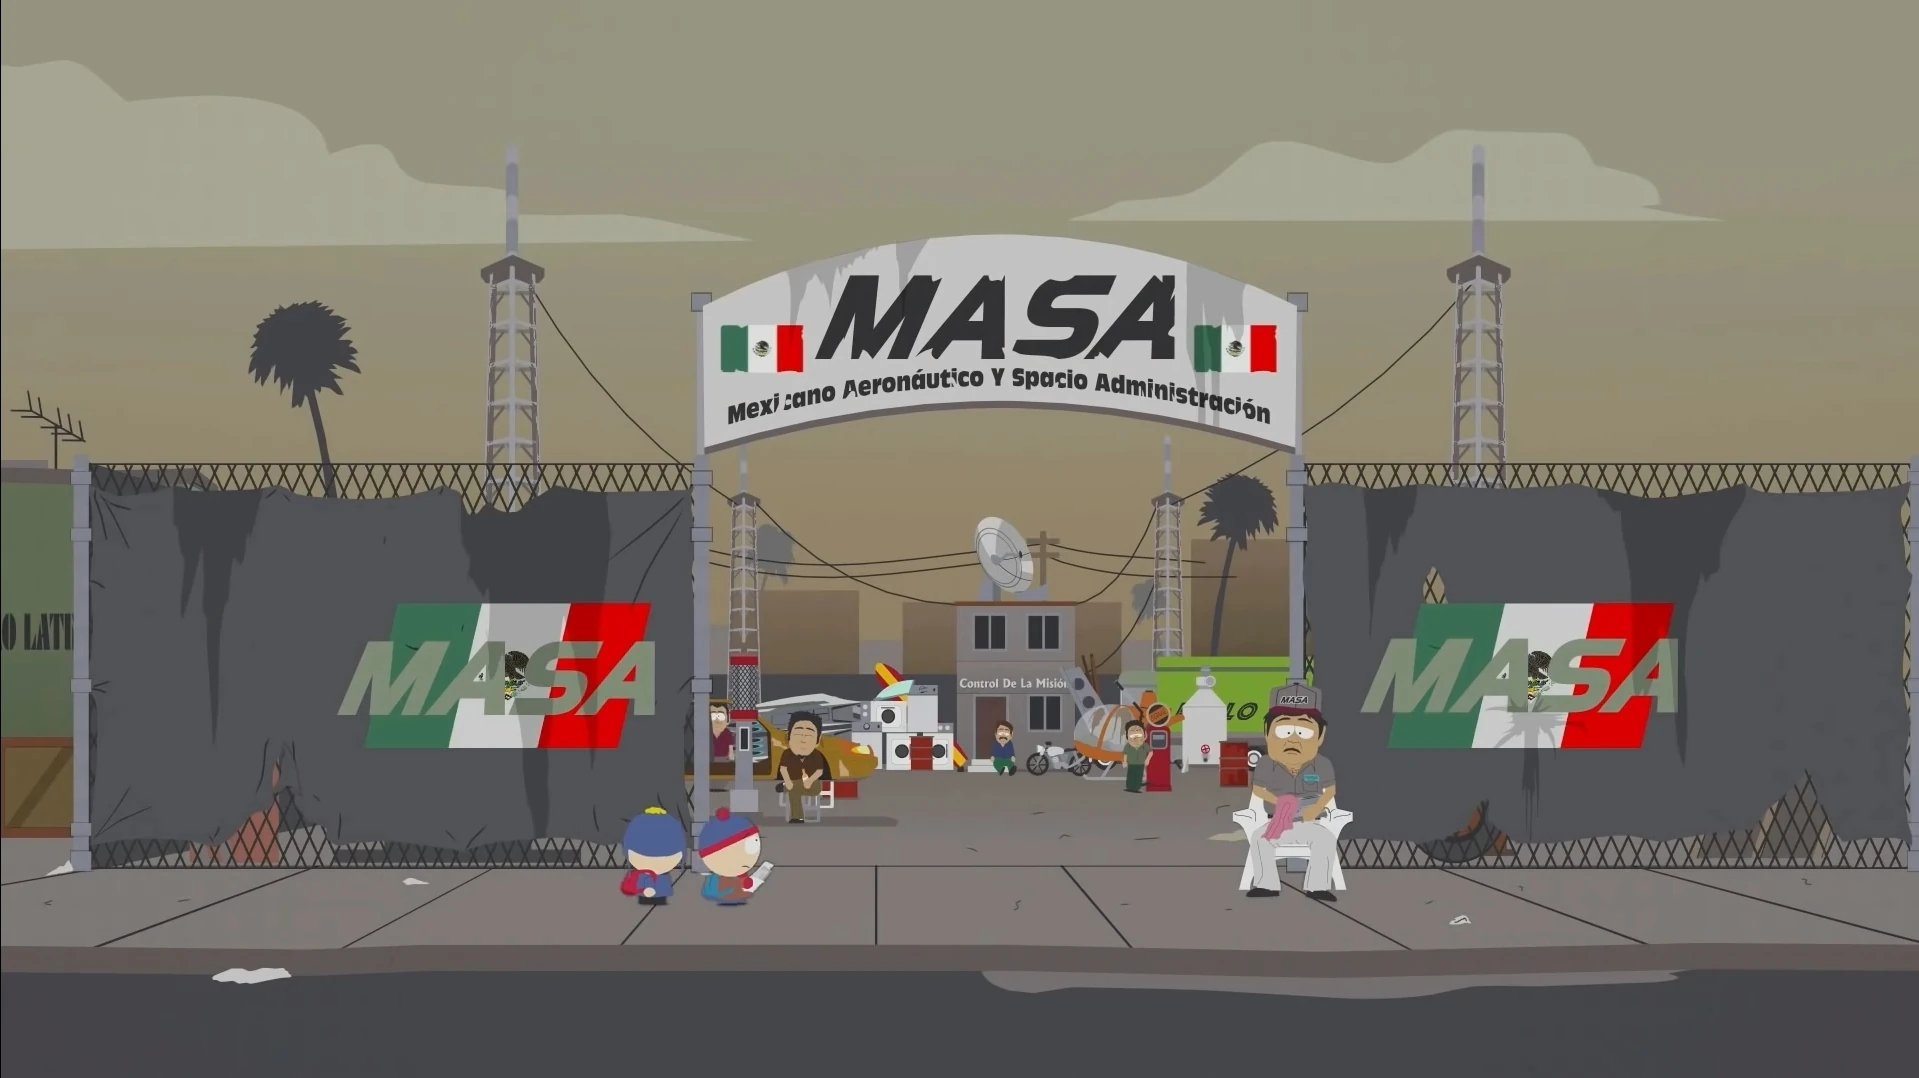 Mexicano Aeronáutico y Spacio Administración | South Park Archiv Blank Meme Template